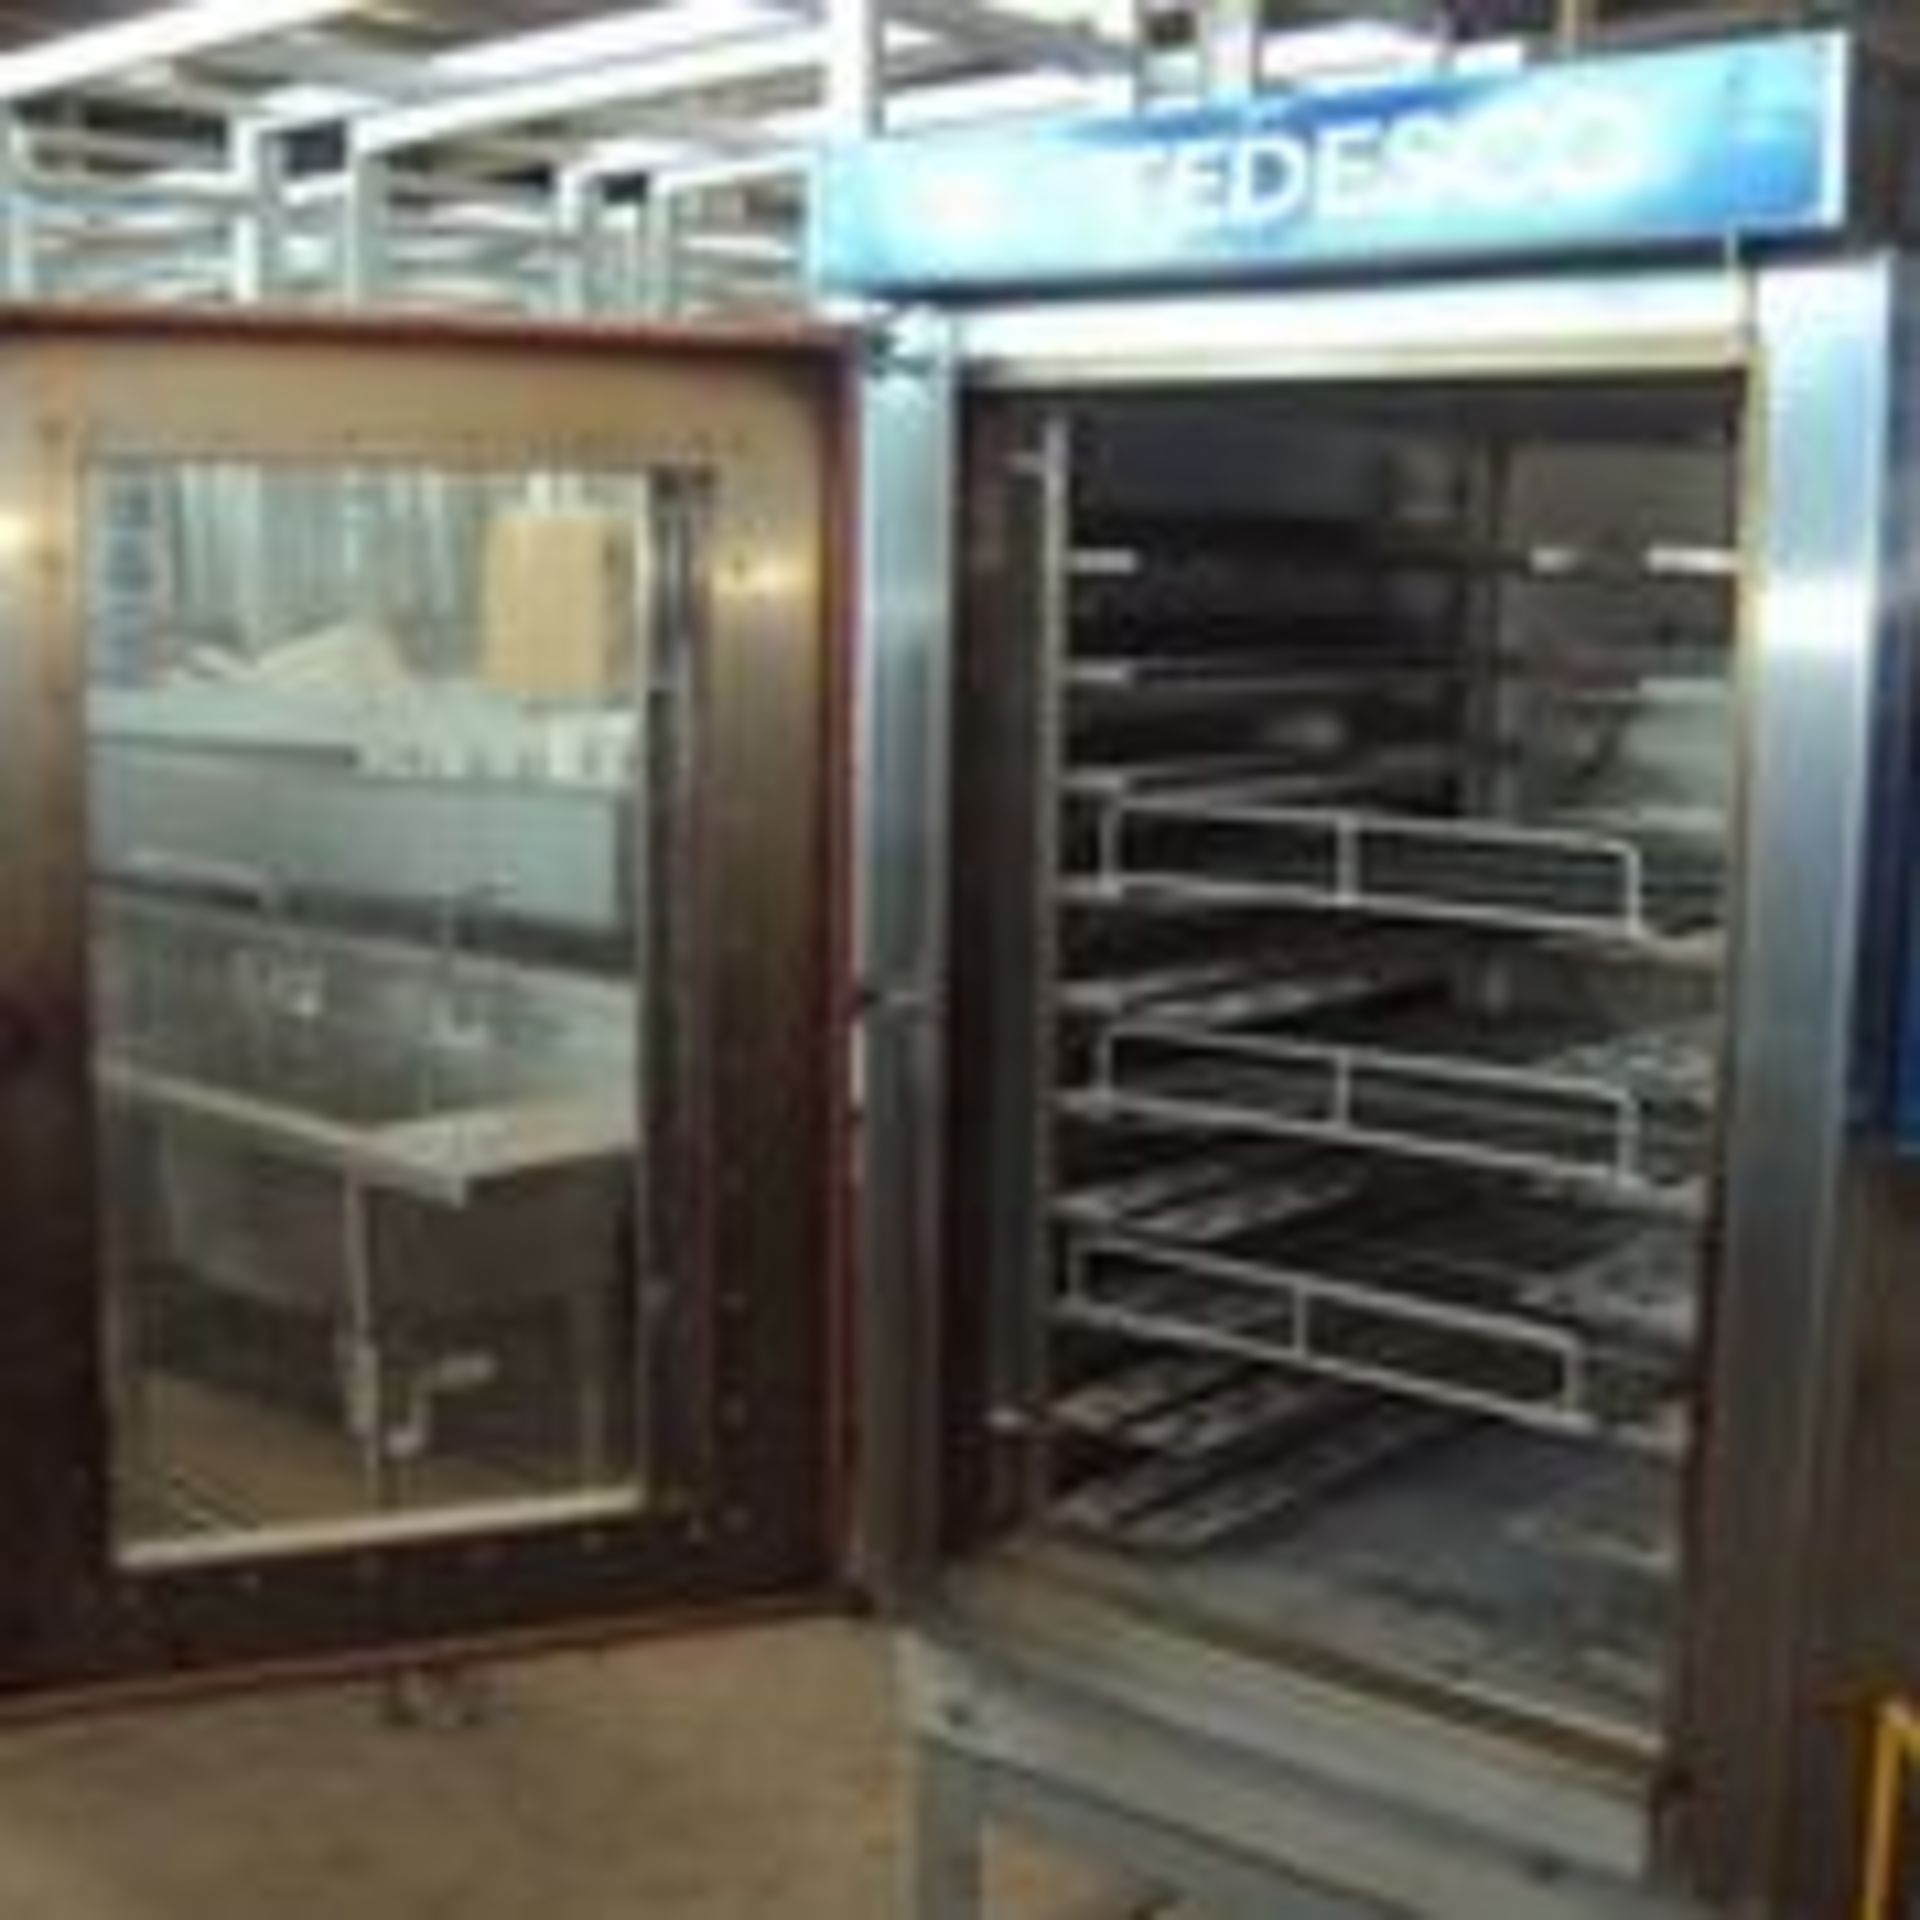 New Tedesco Covection oven, Model: FTT 300 NEW, Serial: 24638, Energy: 110V, 60Hz, 1ph, Material: - Image 6 of 7